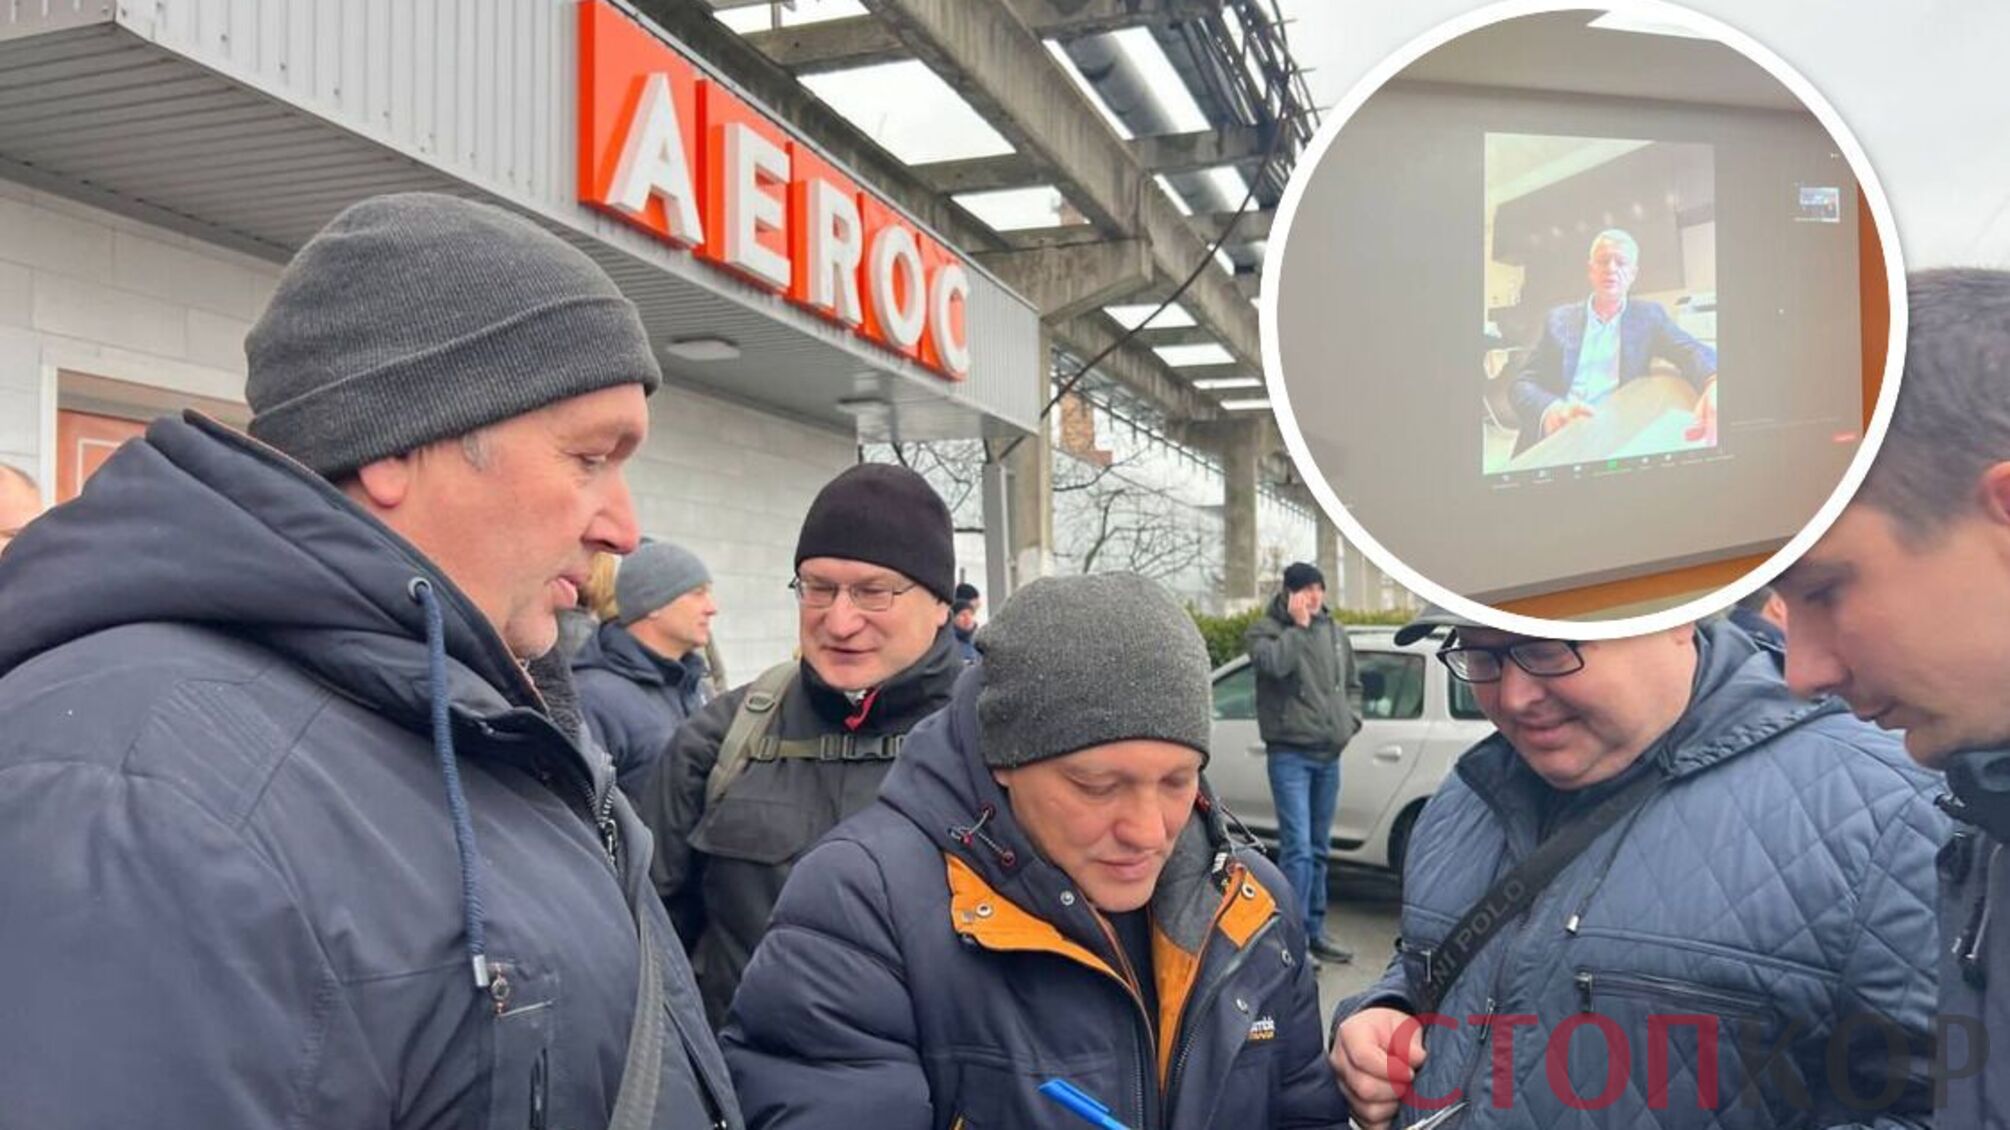 Администрация 'Аэрок' российского олигарха Молчанова торгует арестованной продукцией и увольняет работников - детали